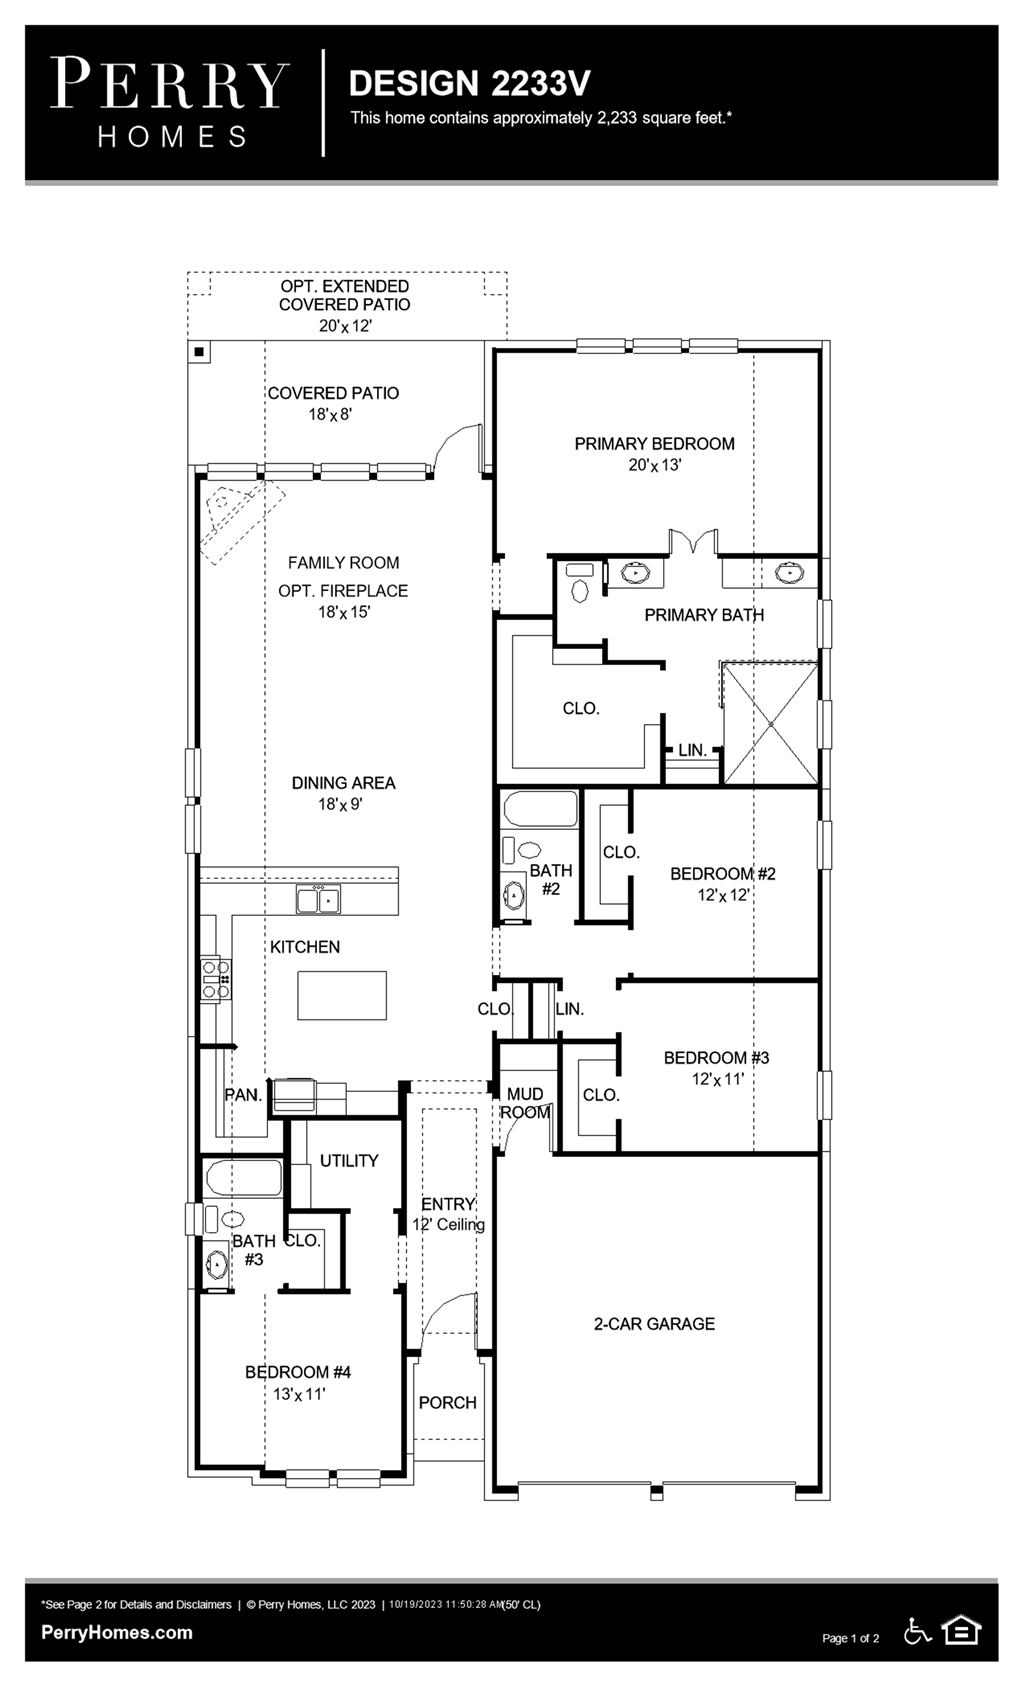 Floor Plan for 2233V